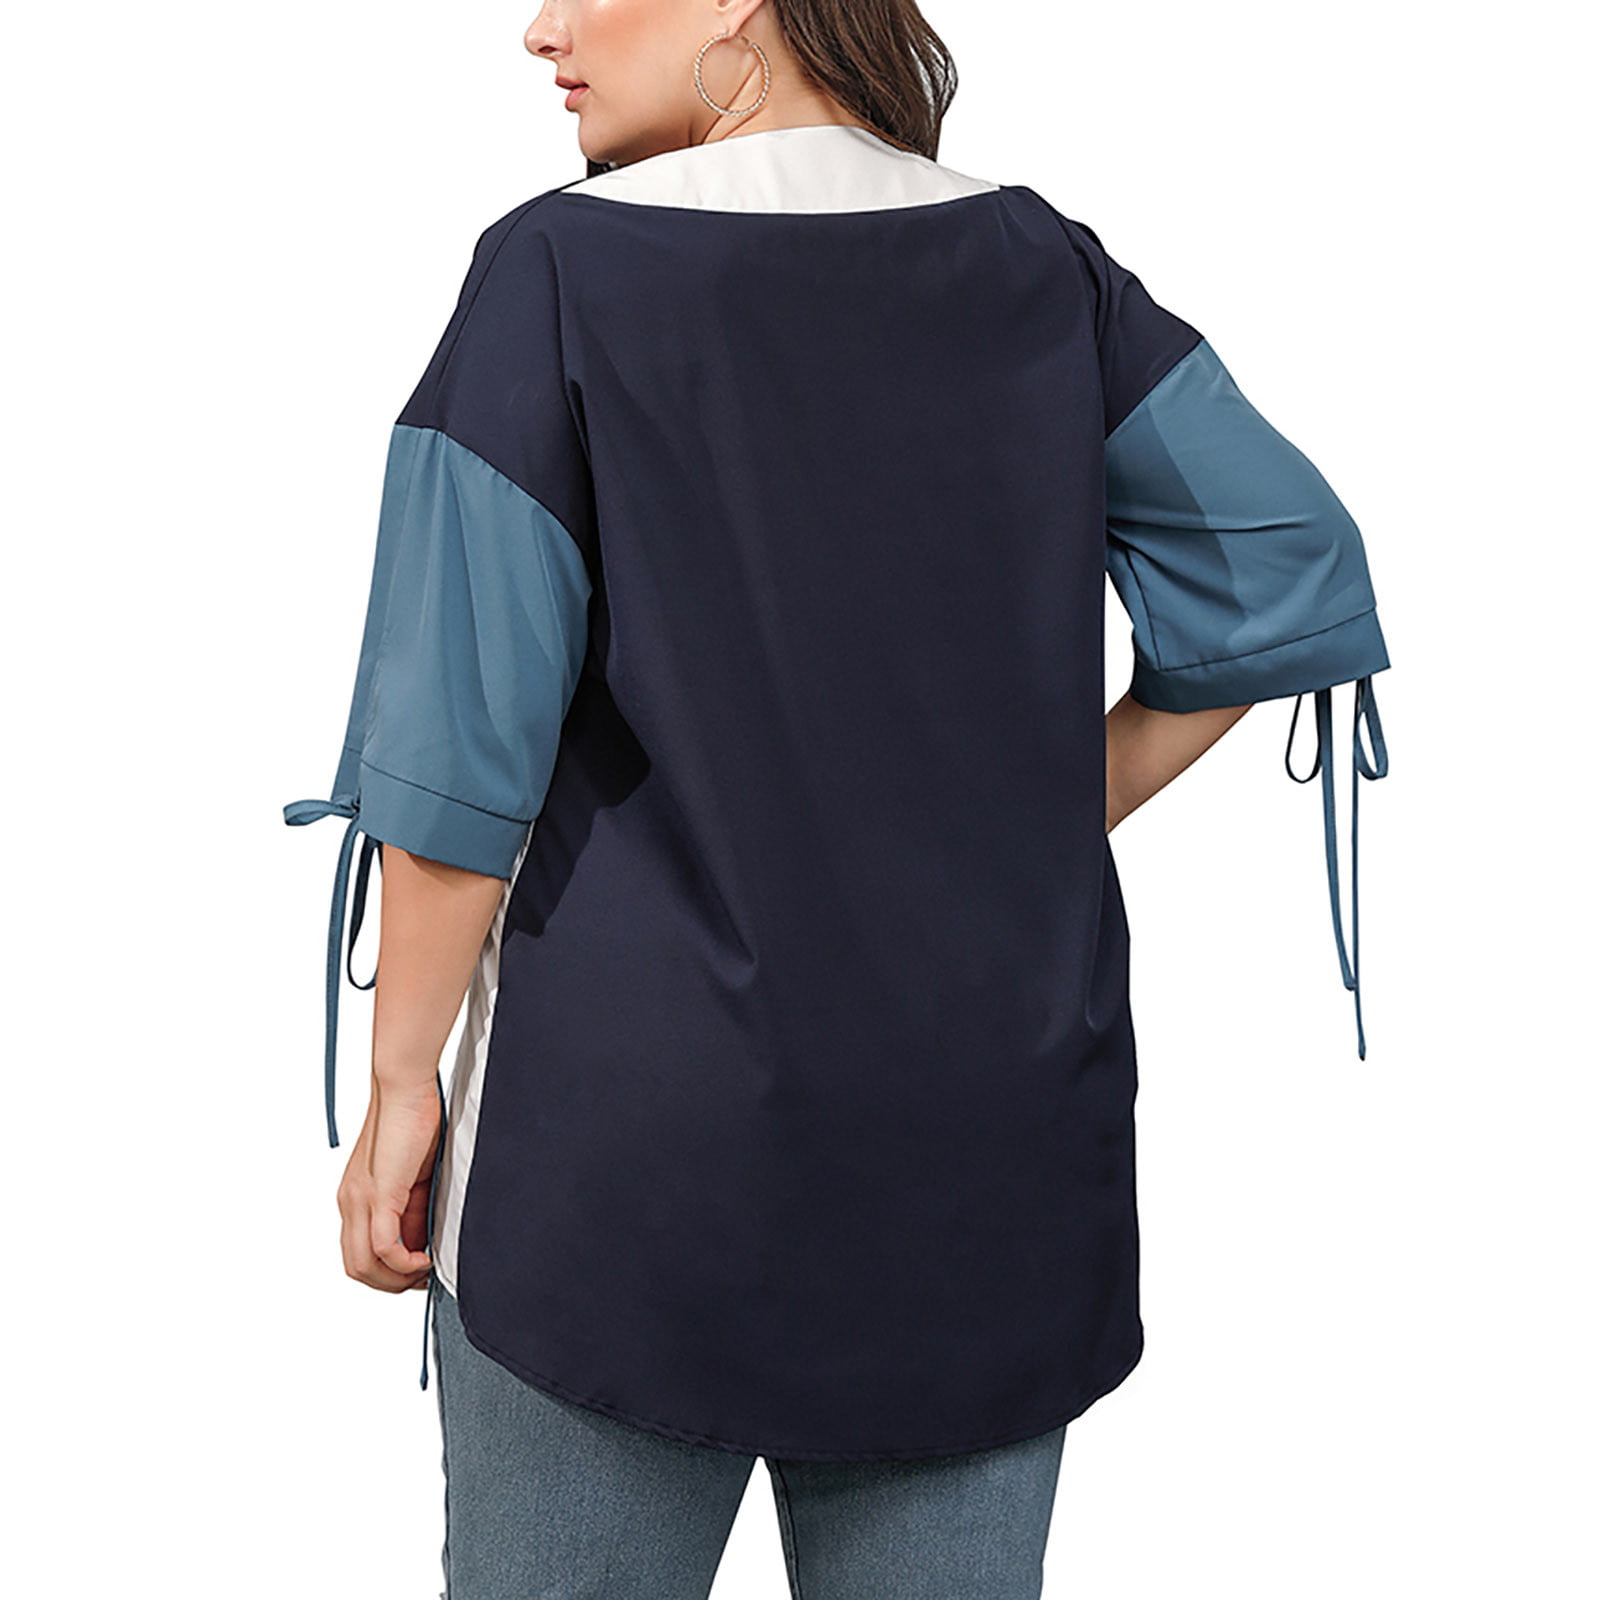 Jerdar Women Summer Tops Women Classic Plus Size Summer Panel Half Sleeve  Loose Tops Blouses Shirt Dark Blue 3XL